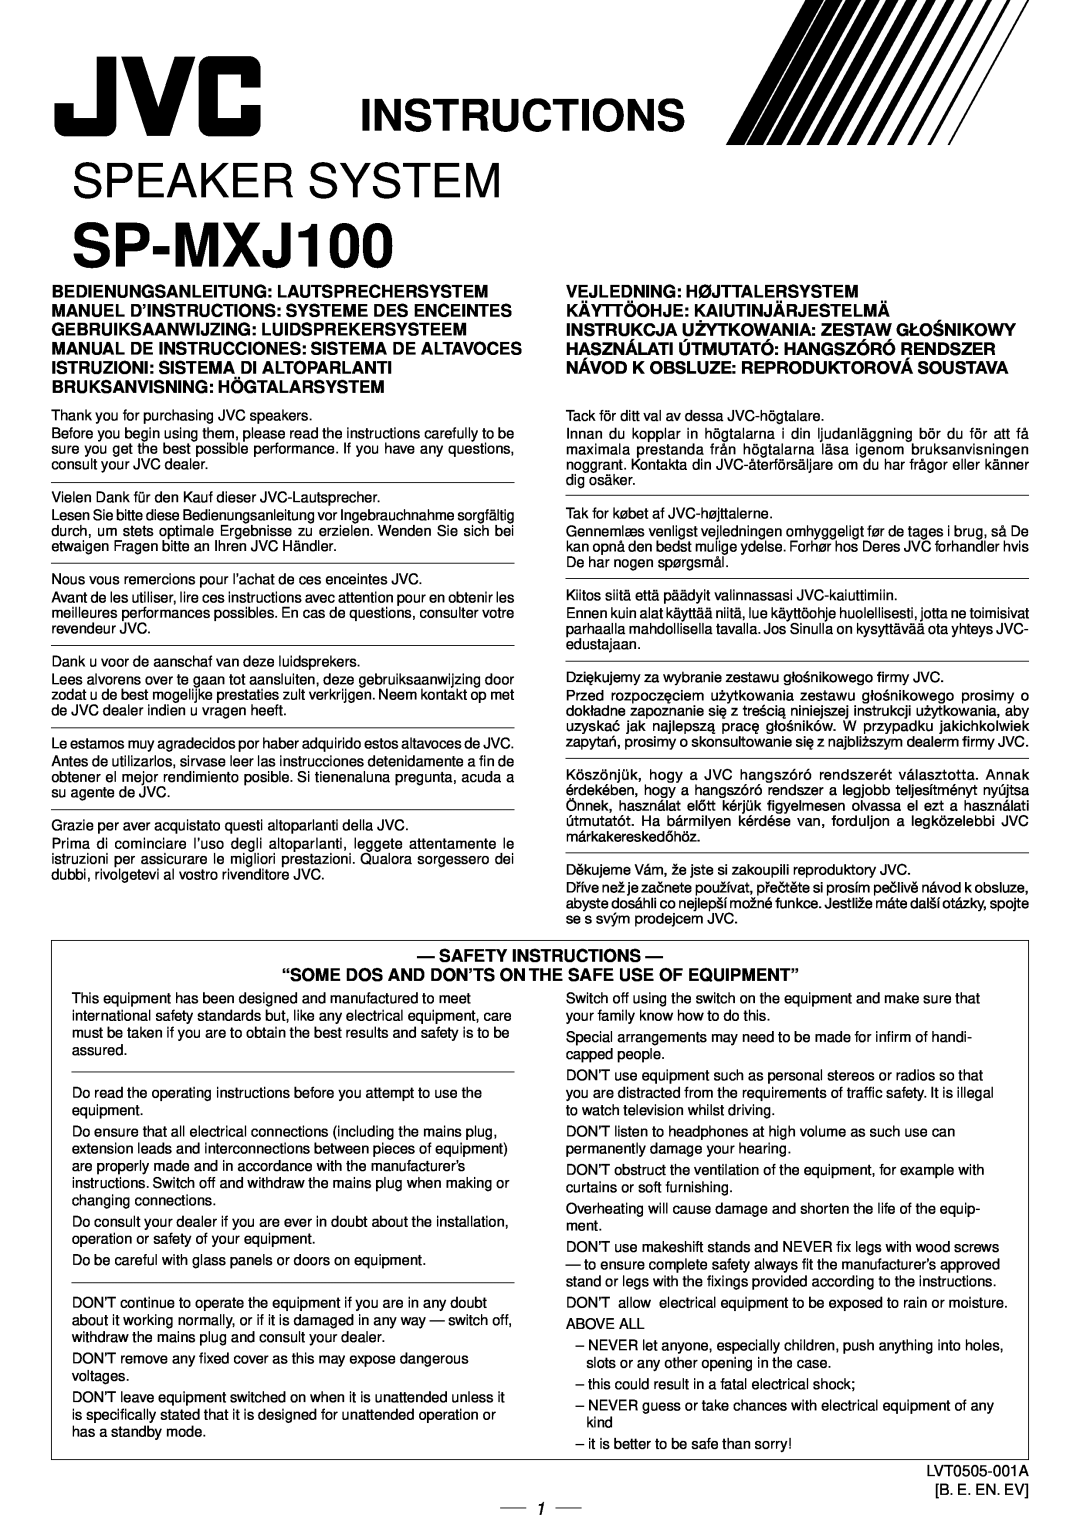 JVC CA-MXJ100 manual Instructions, SP-MXJ100, Speaker System, Instrukcja U¯Ytkowania Zestaw G£Onikowy 